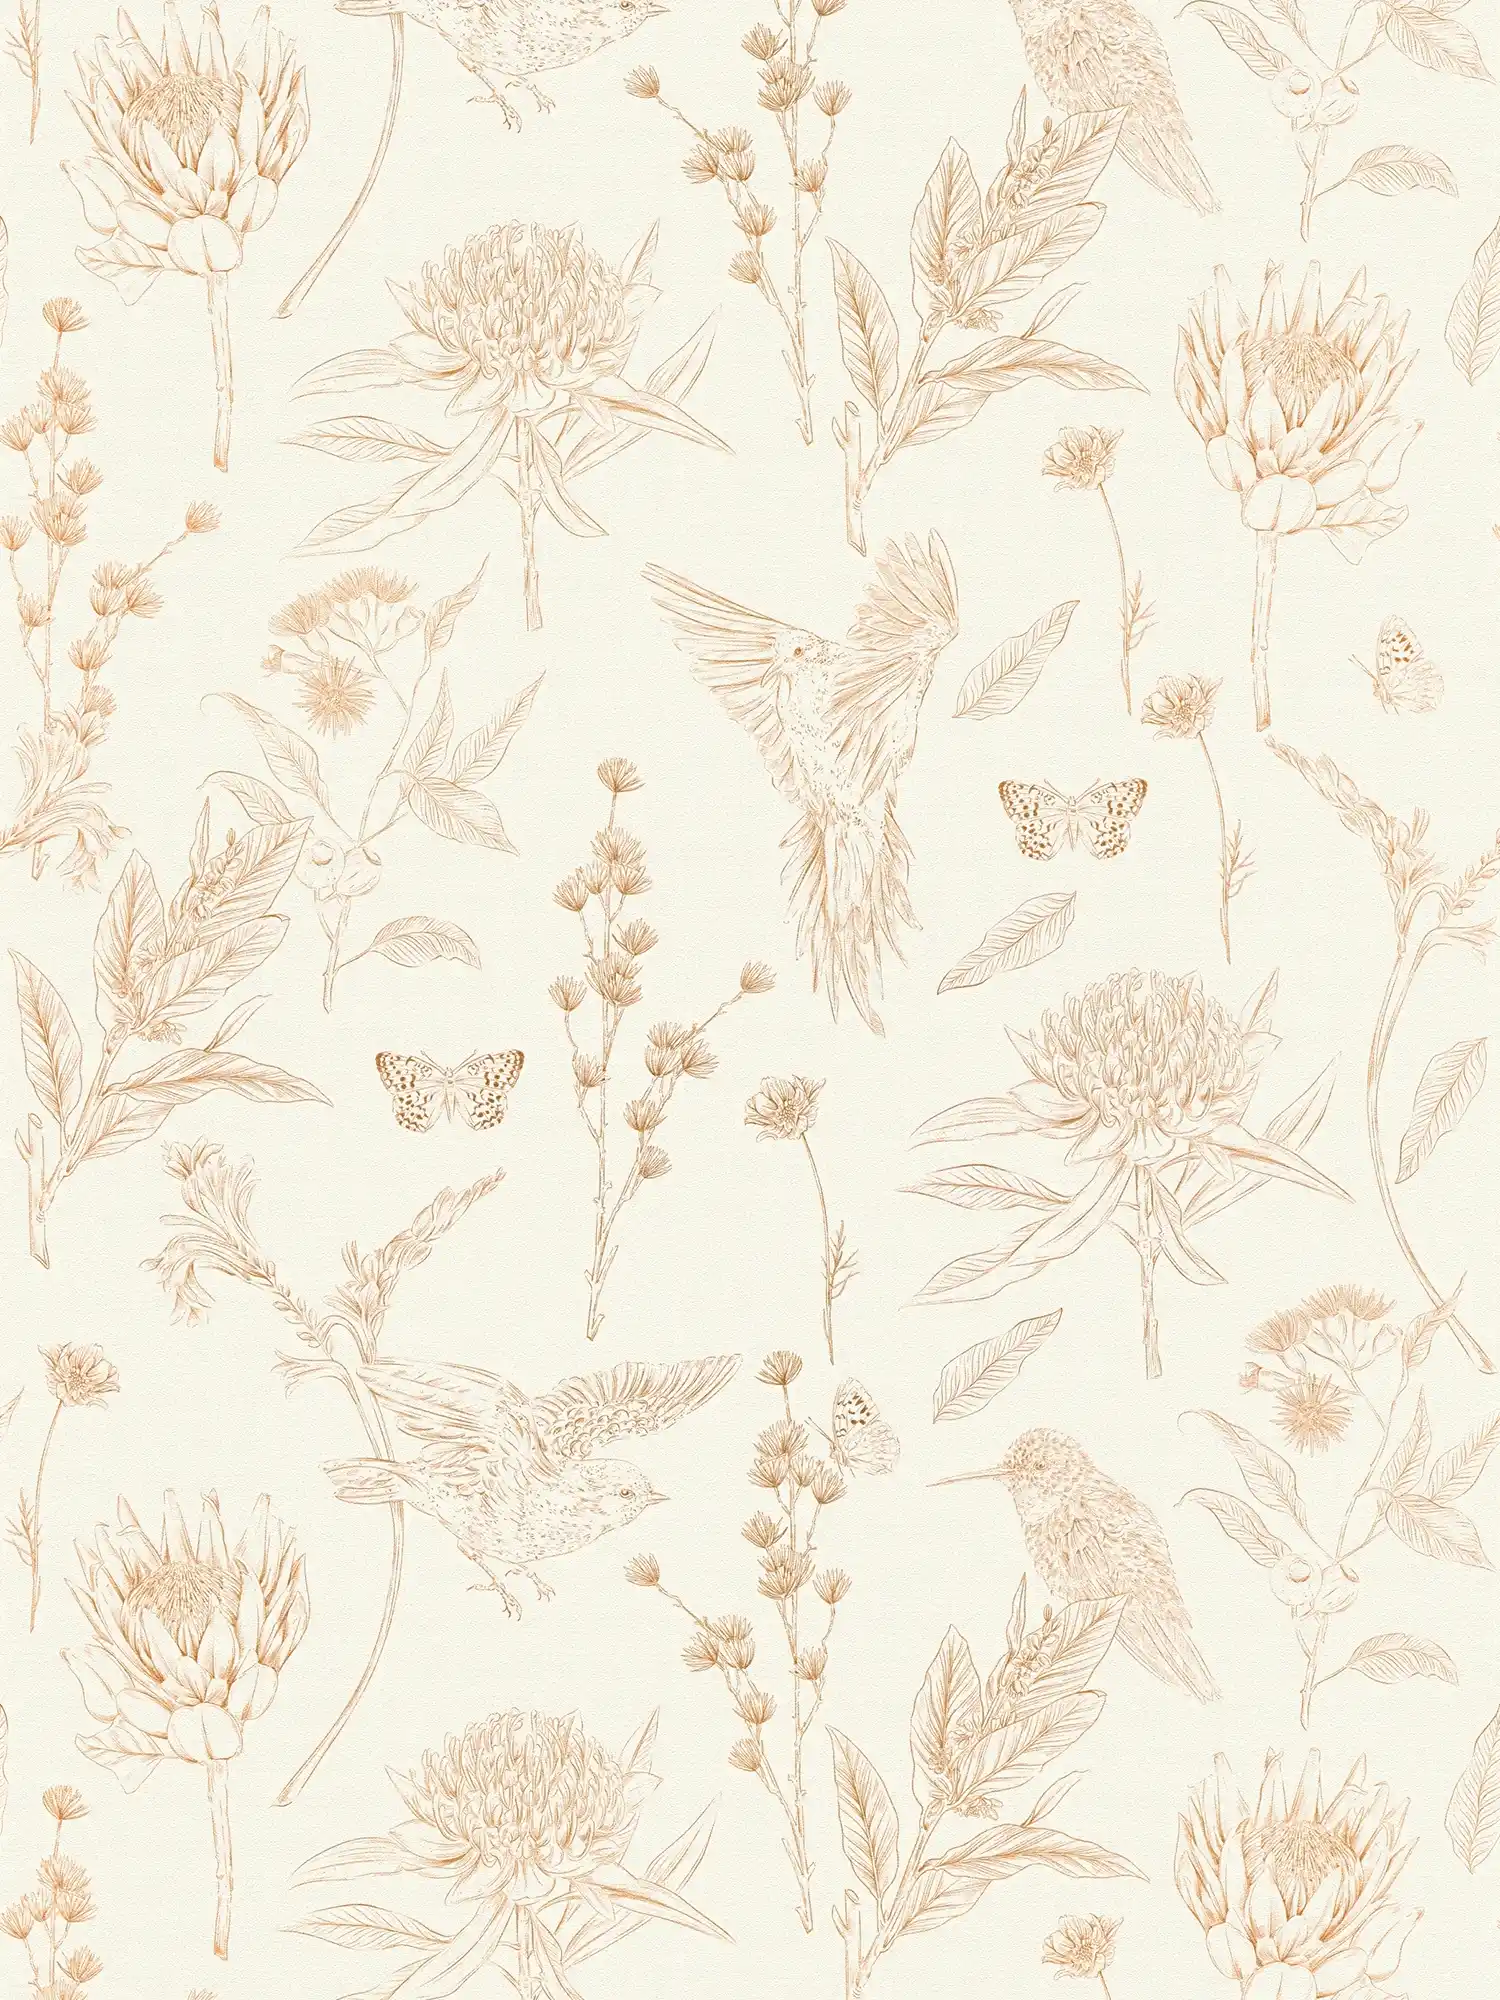         Bloemrijkbehang met bladeren & dieren mat gestructureerd - wit, bruin, beige
    